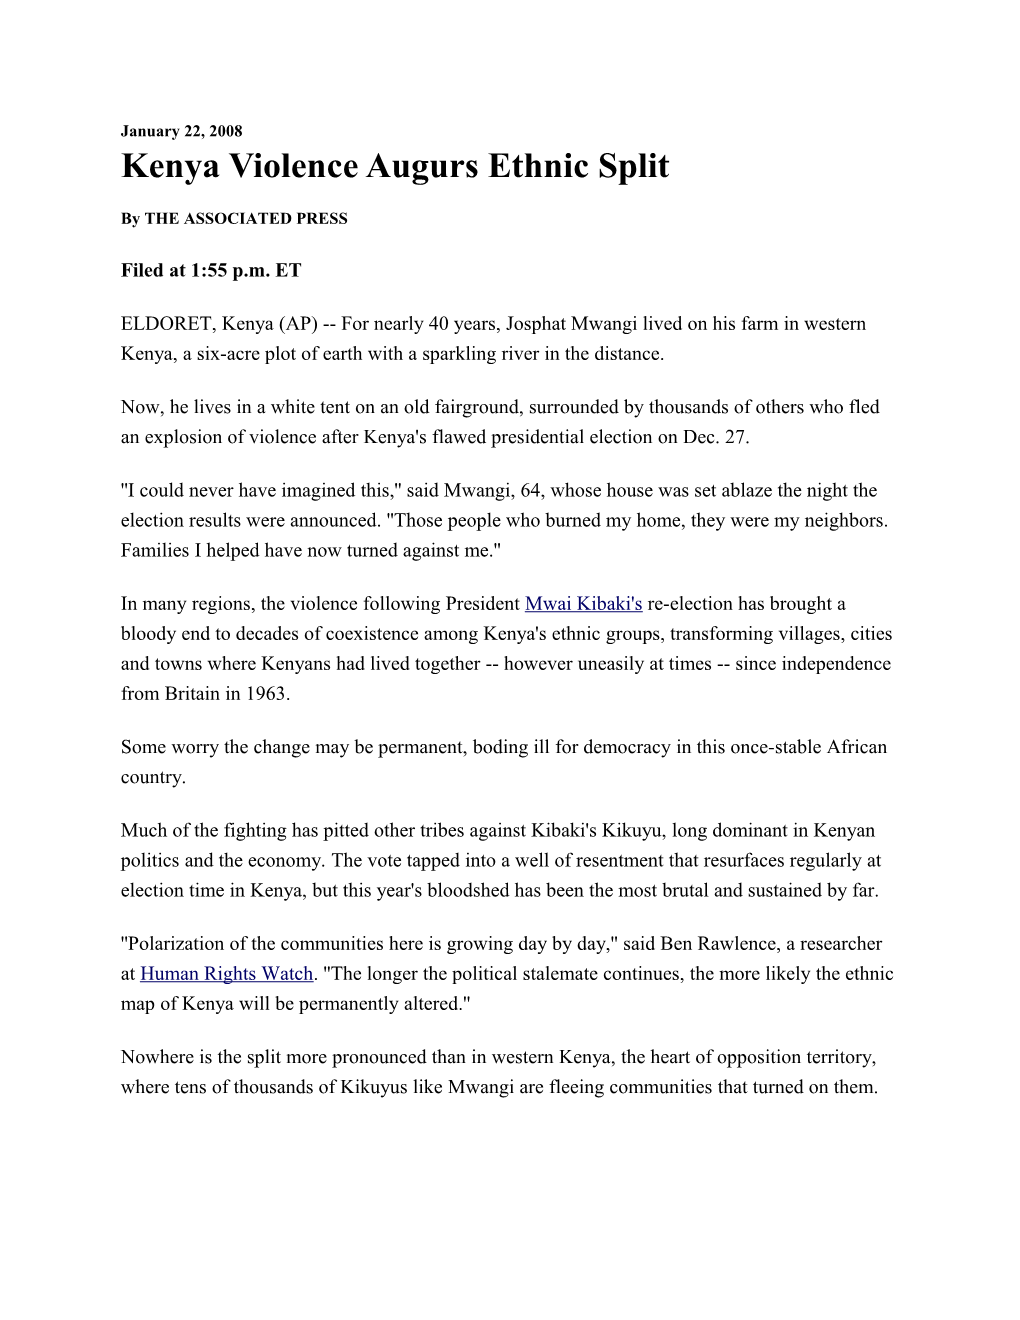 Kenya Violence Augurs Ethnic Split